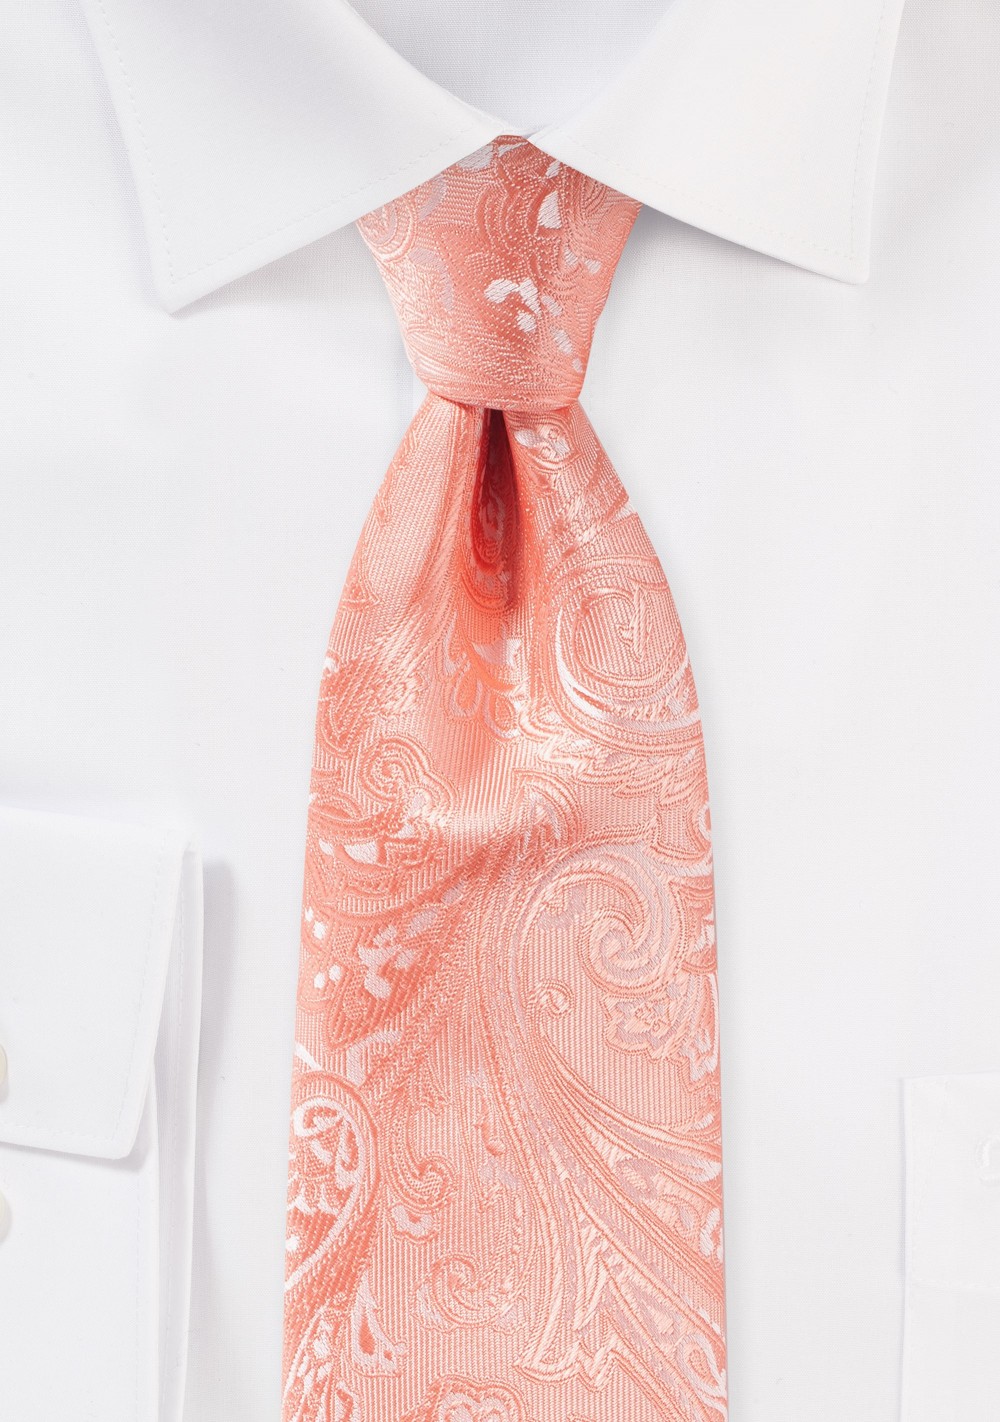 Rich Woven Paisley Tie in Bellini